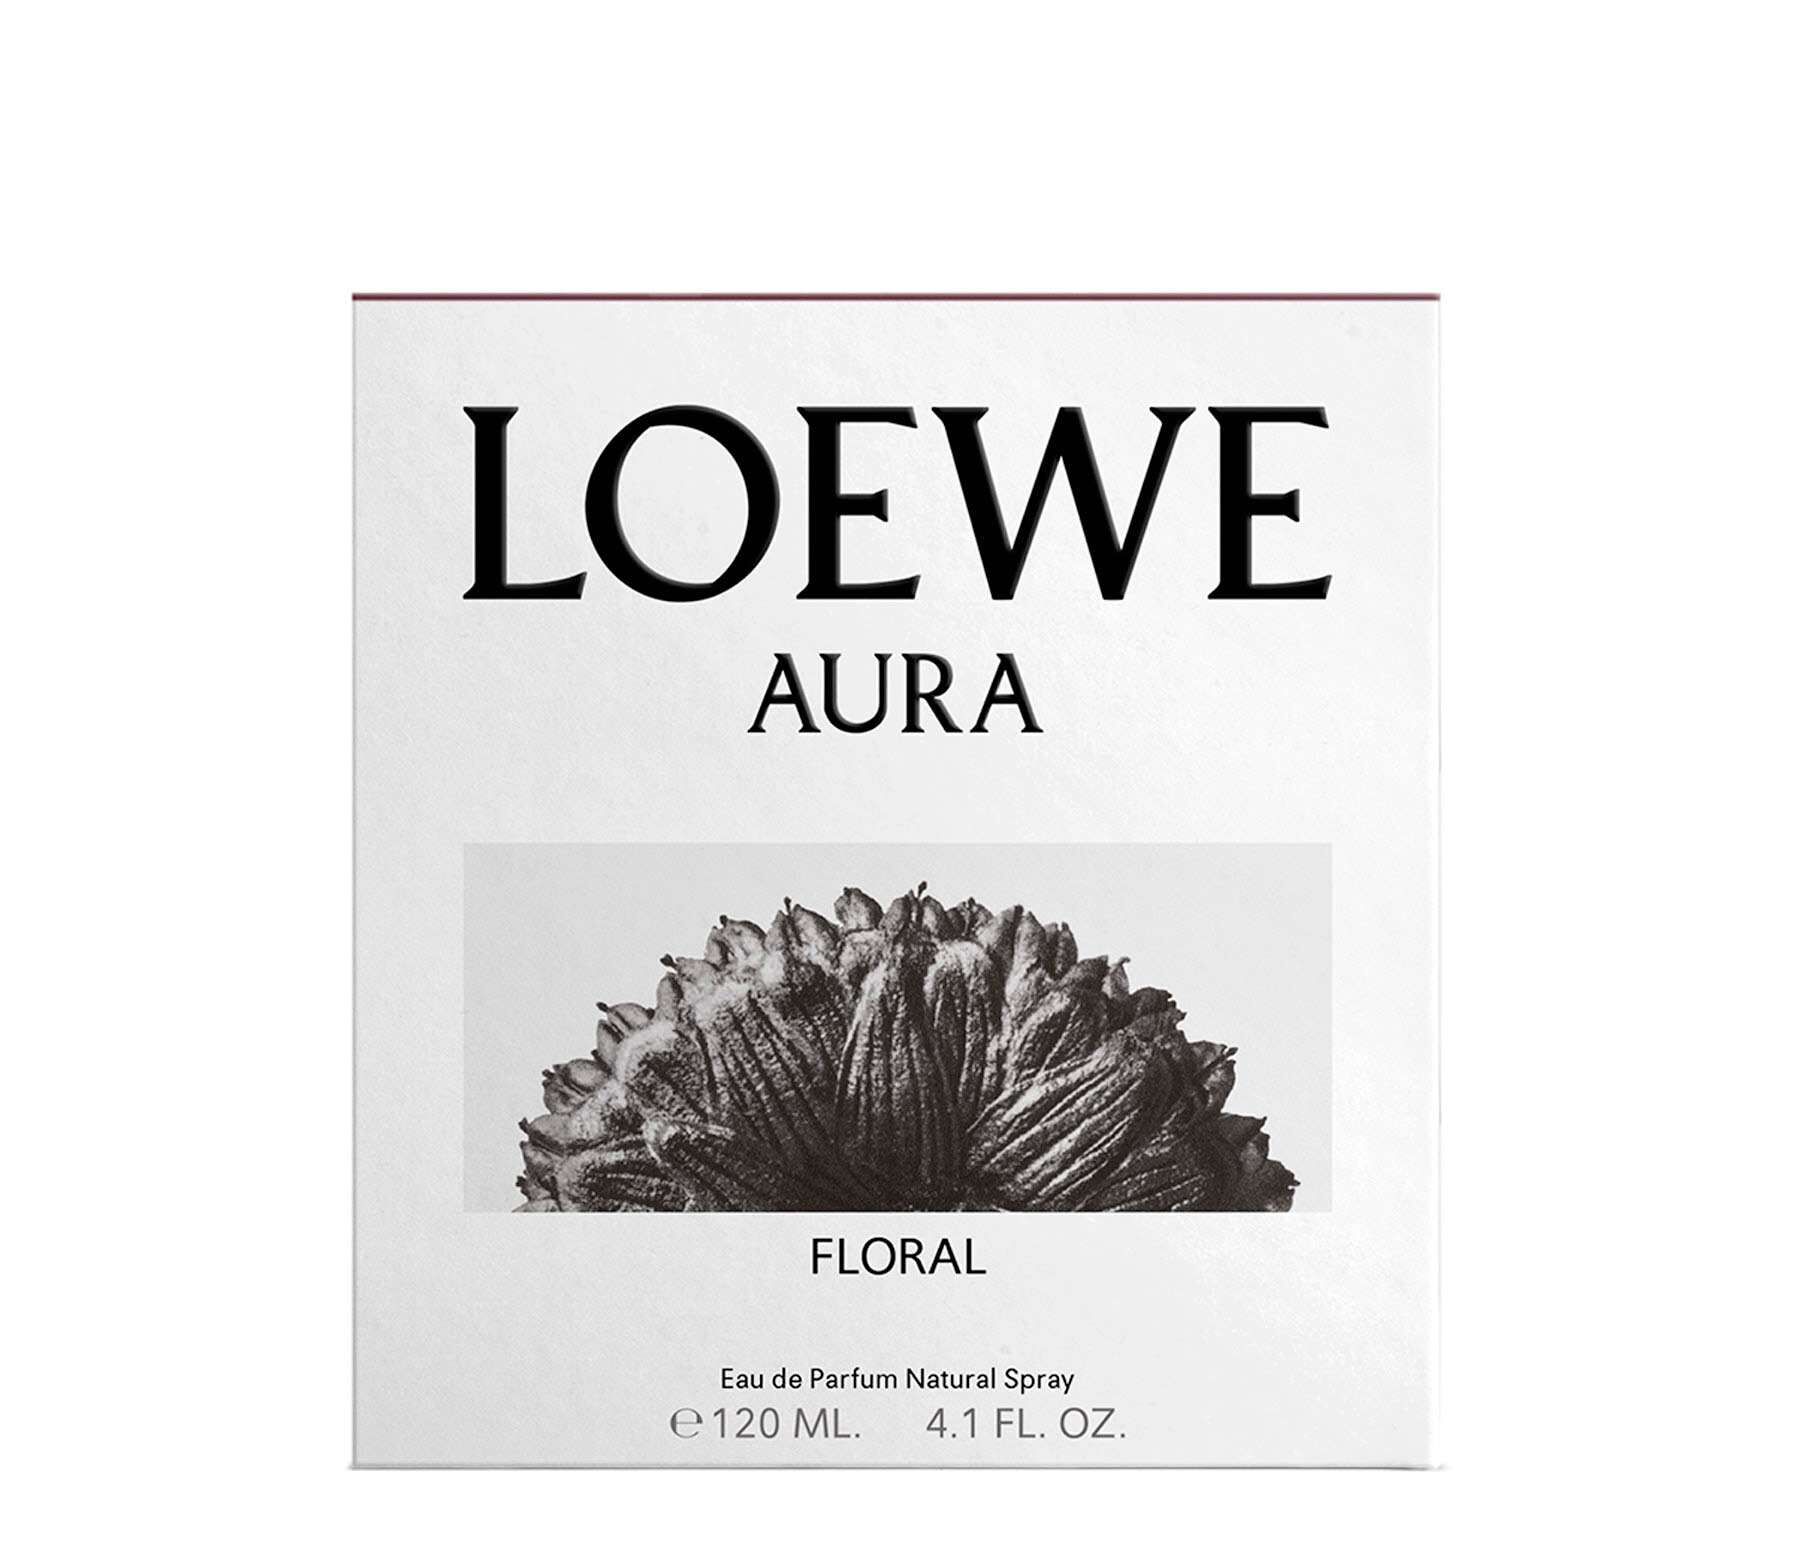 loewe aura floral 120 ml